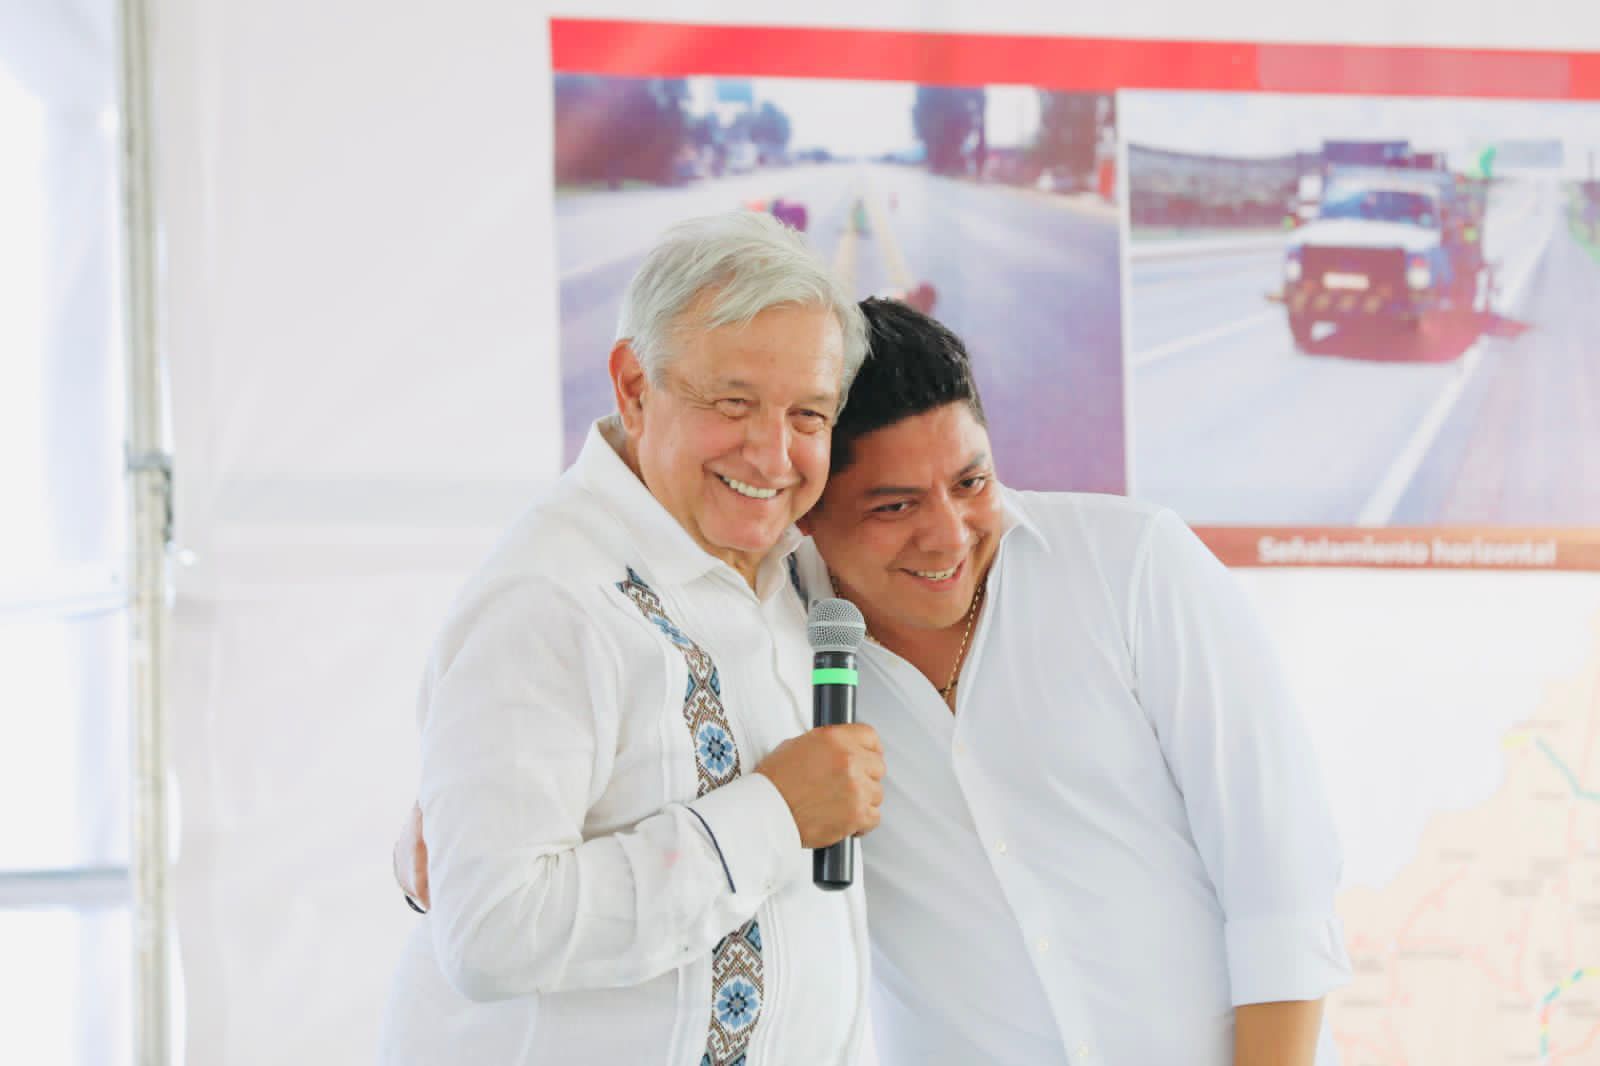 López Obrador reconoció los programas sociales de Ricardo Gallardo Cardona, que, sumados a los programas federales